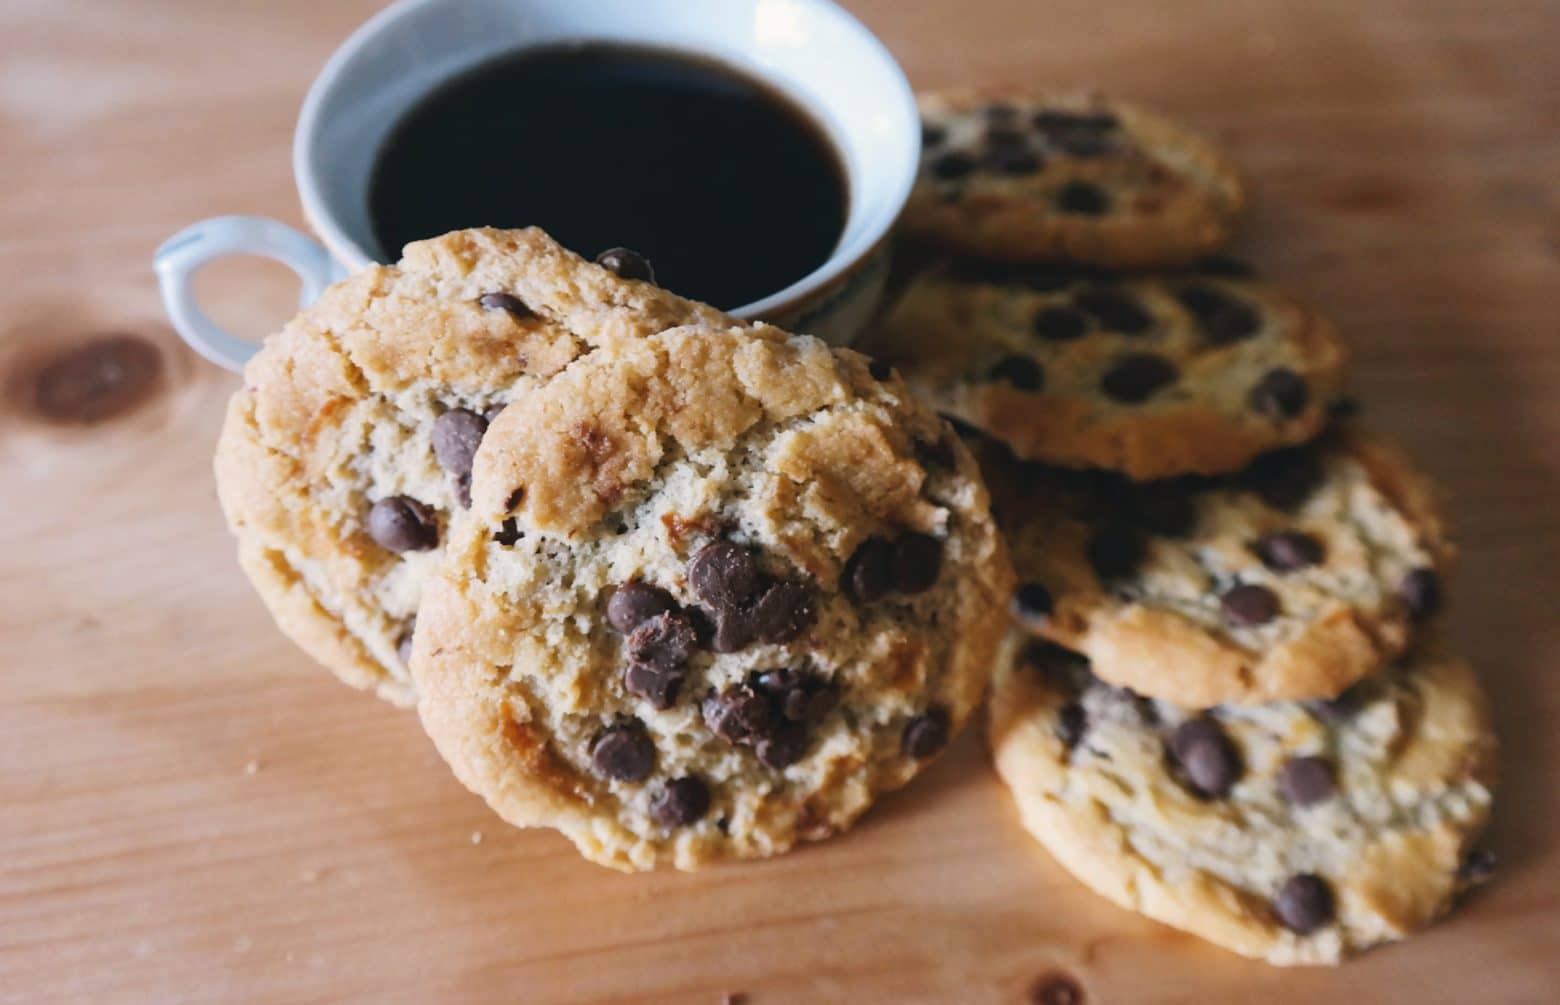 Sur Google, refuser les cookies sera enfin aussi simple que les accepter